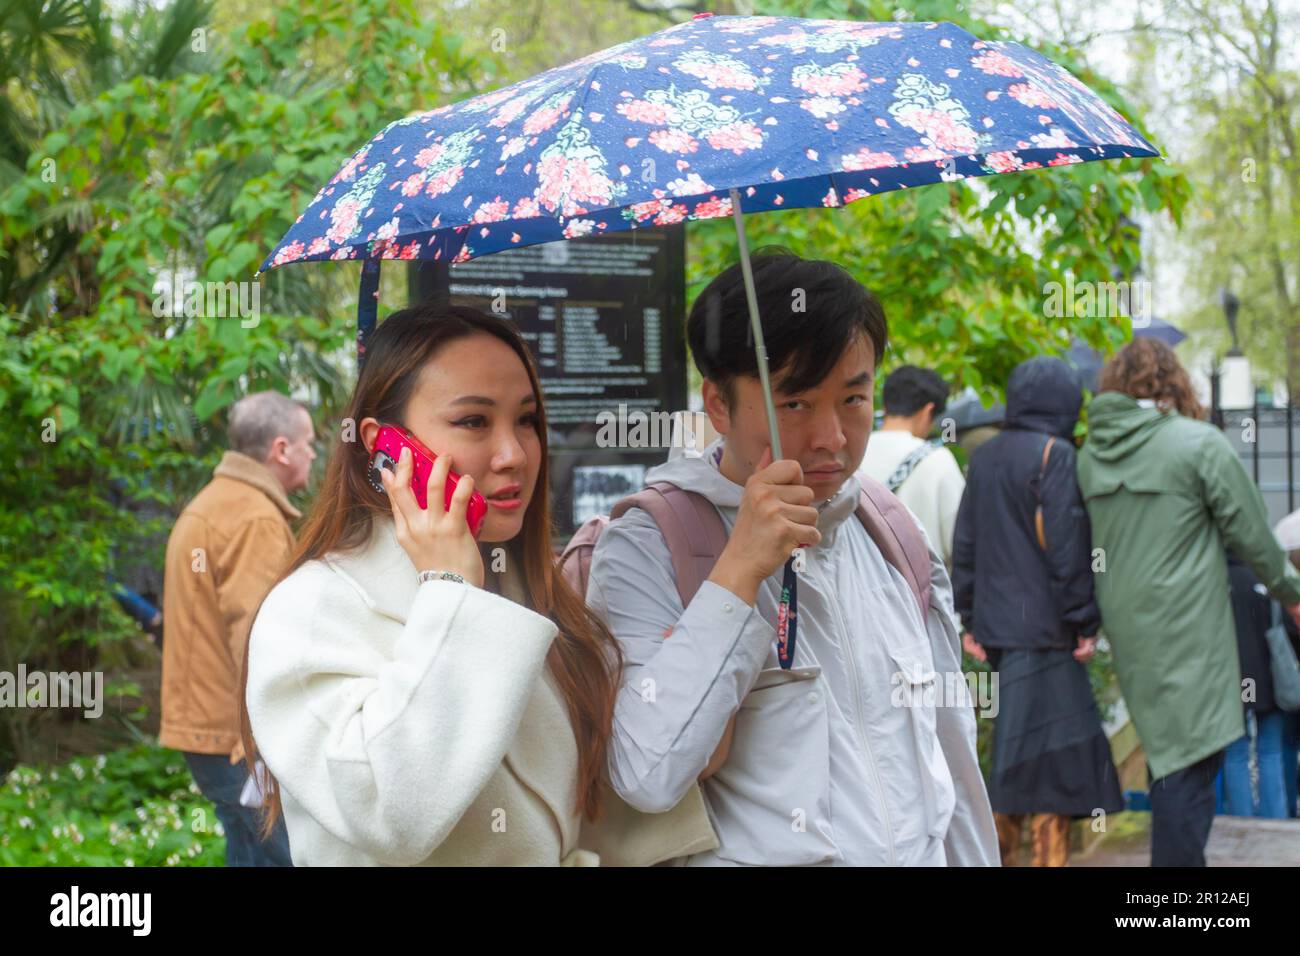 Clima del Reino Unido. Londres, Westminster, Gran Bretaña. Perfil de una pareja asiática de 30s años en Whitehall Gardens Westminster durante una breve lluvia Foto de stock